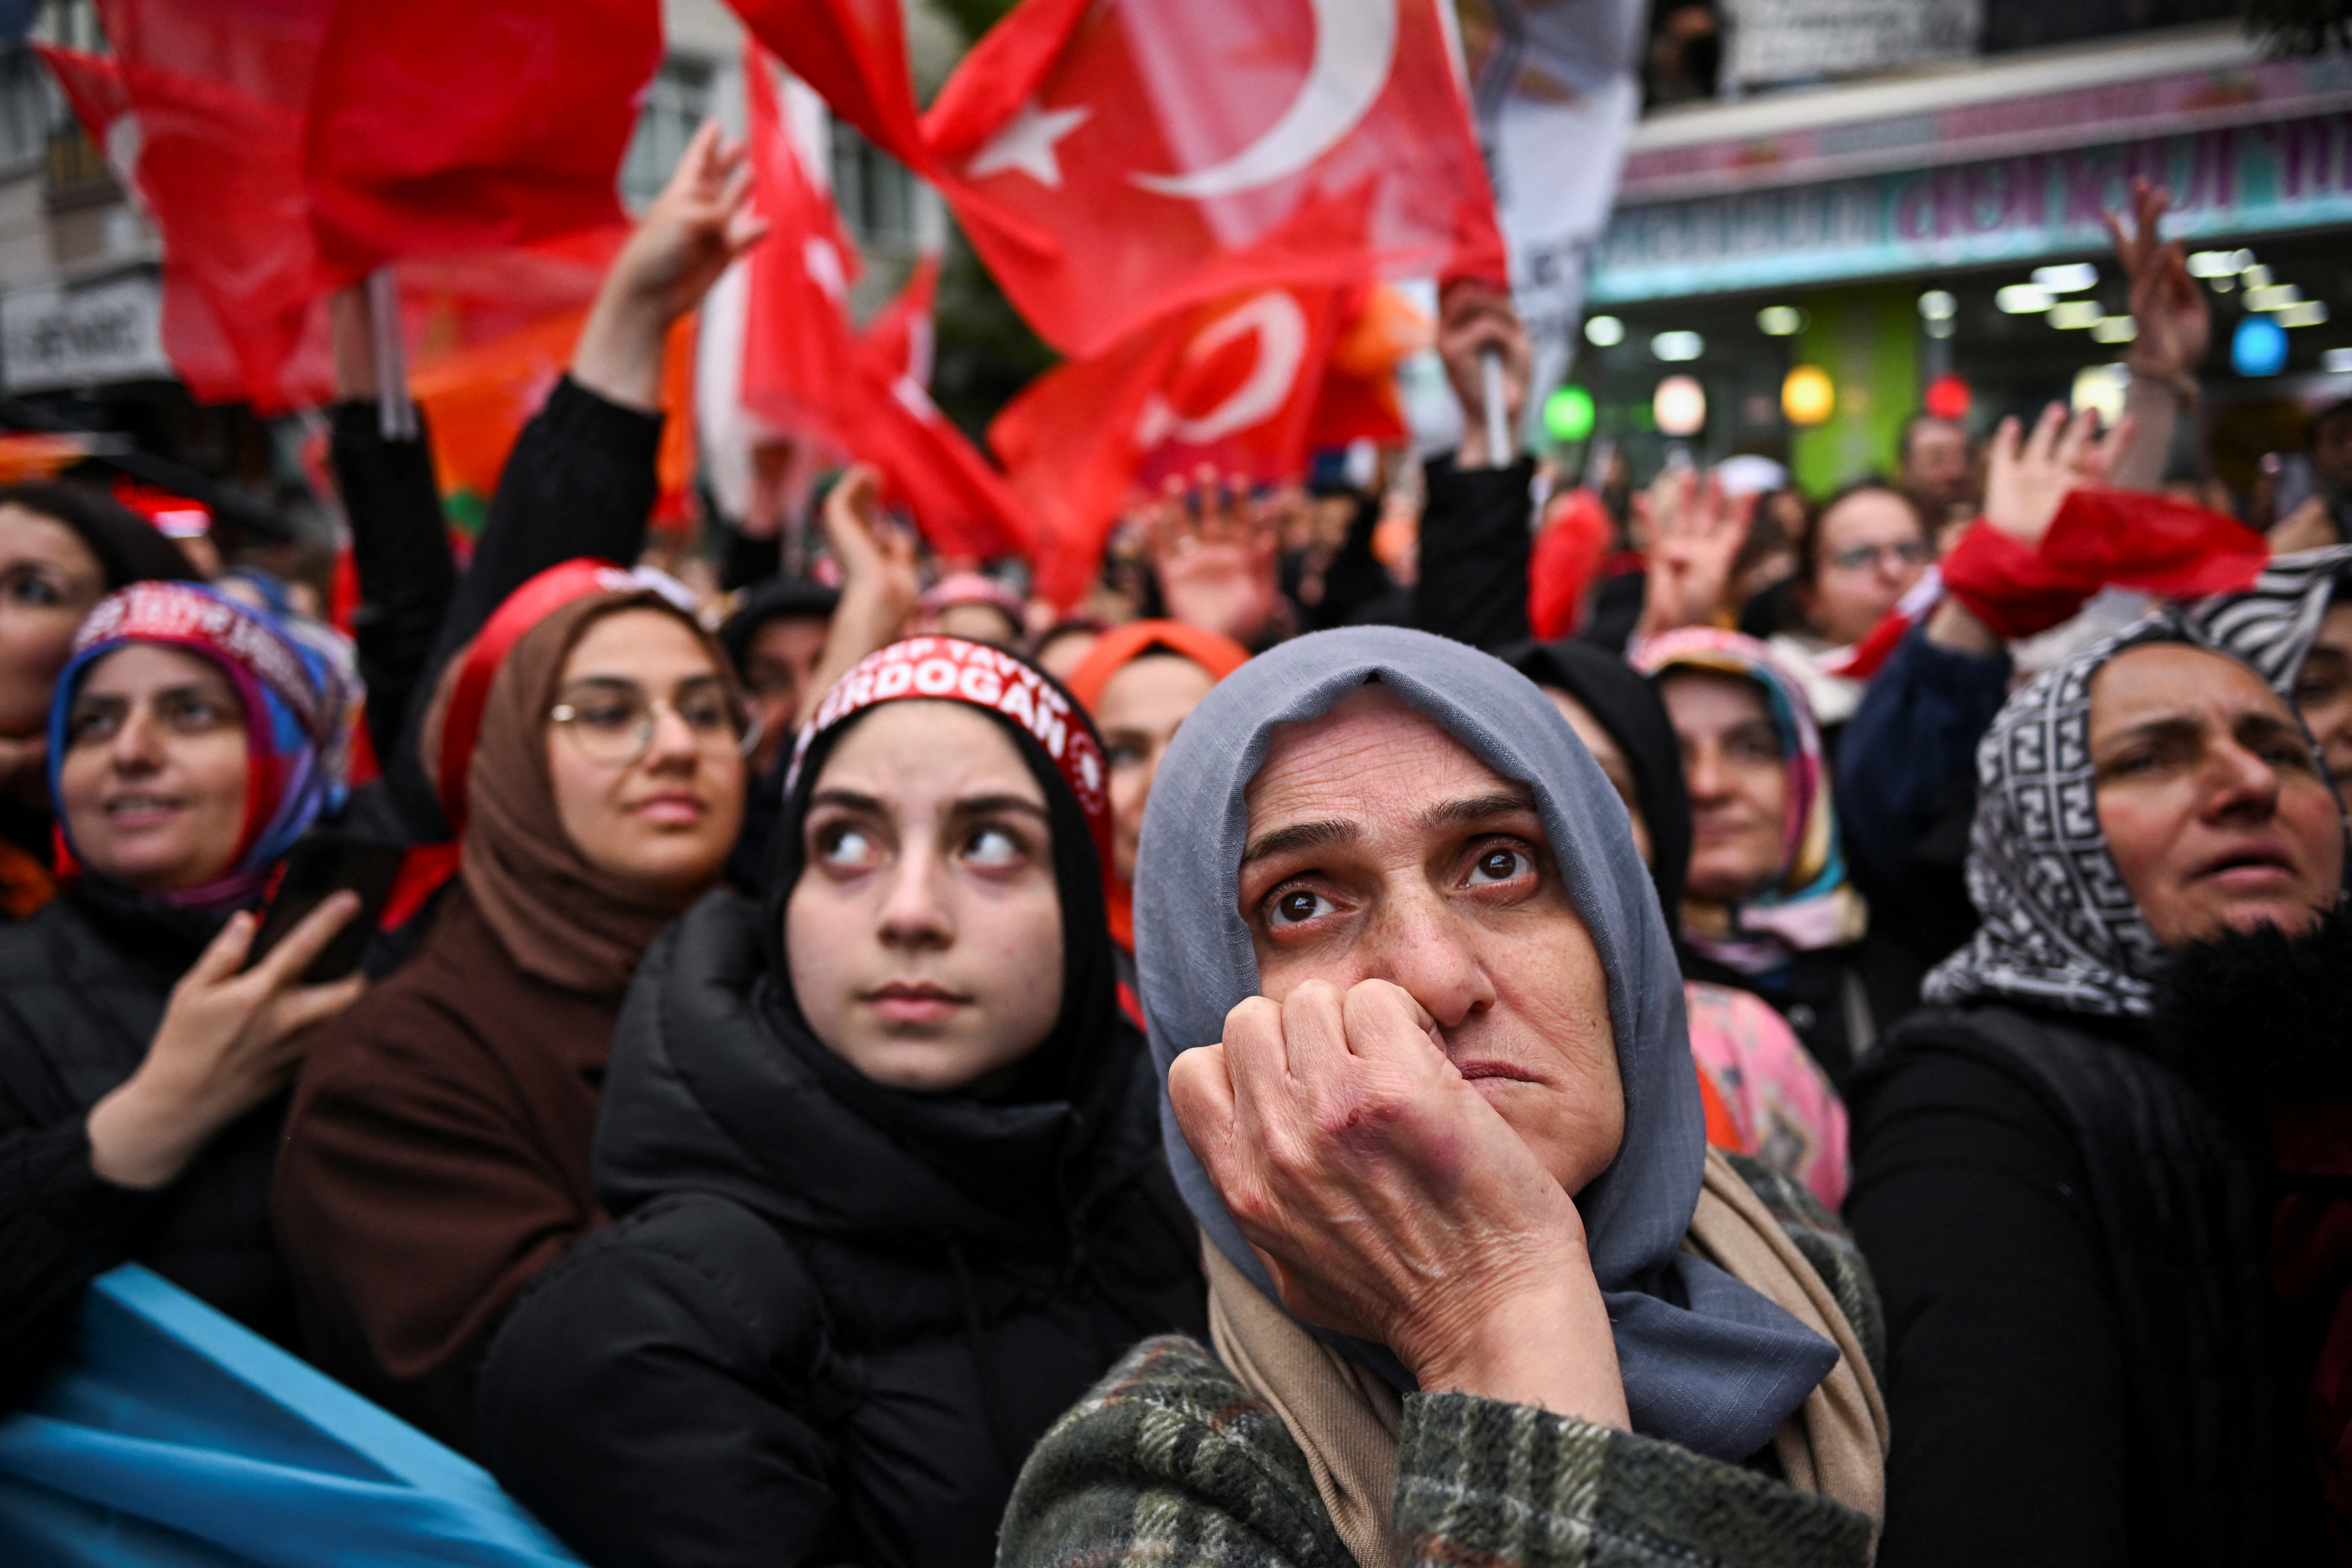 Partidarios del presidente turco Tayyip Erdogan asisten a un mitin en Estambul, Turquía (REUTERS/Dylan Martinez)